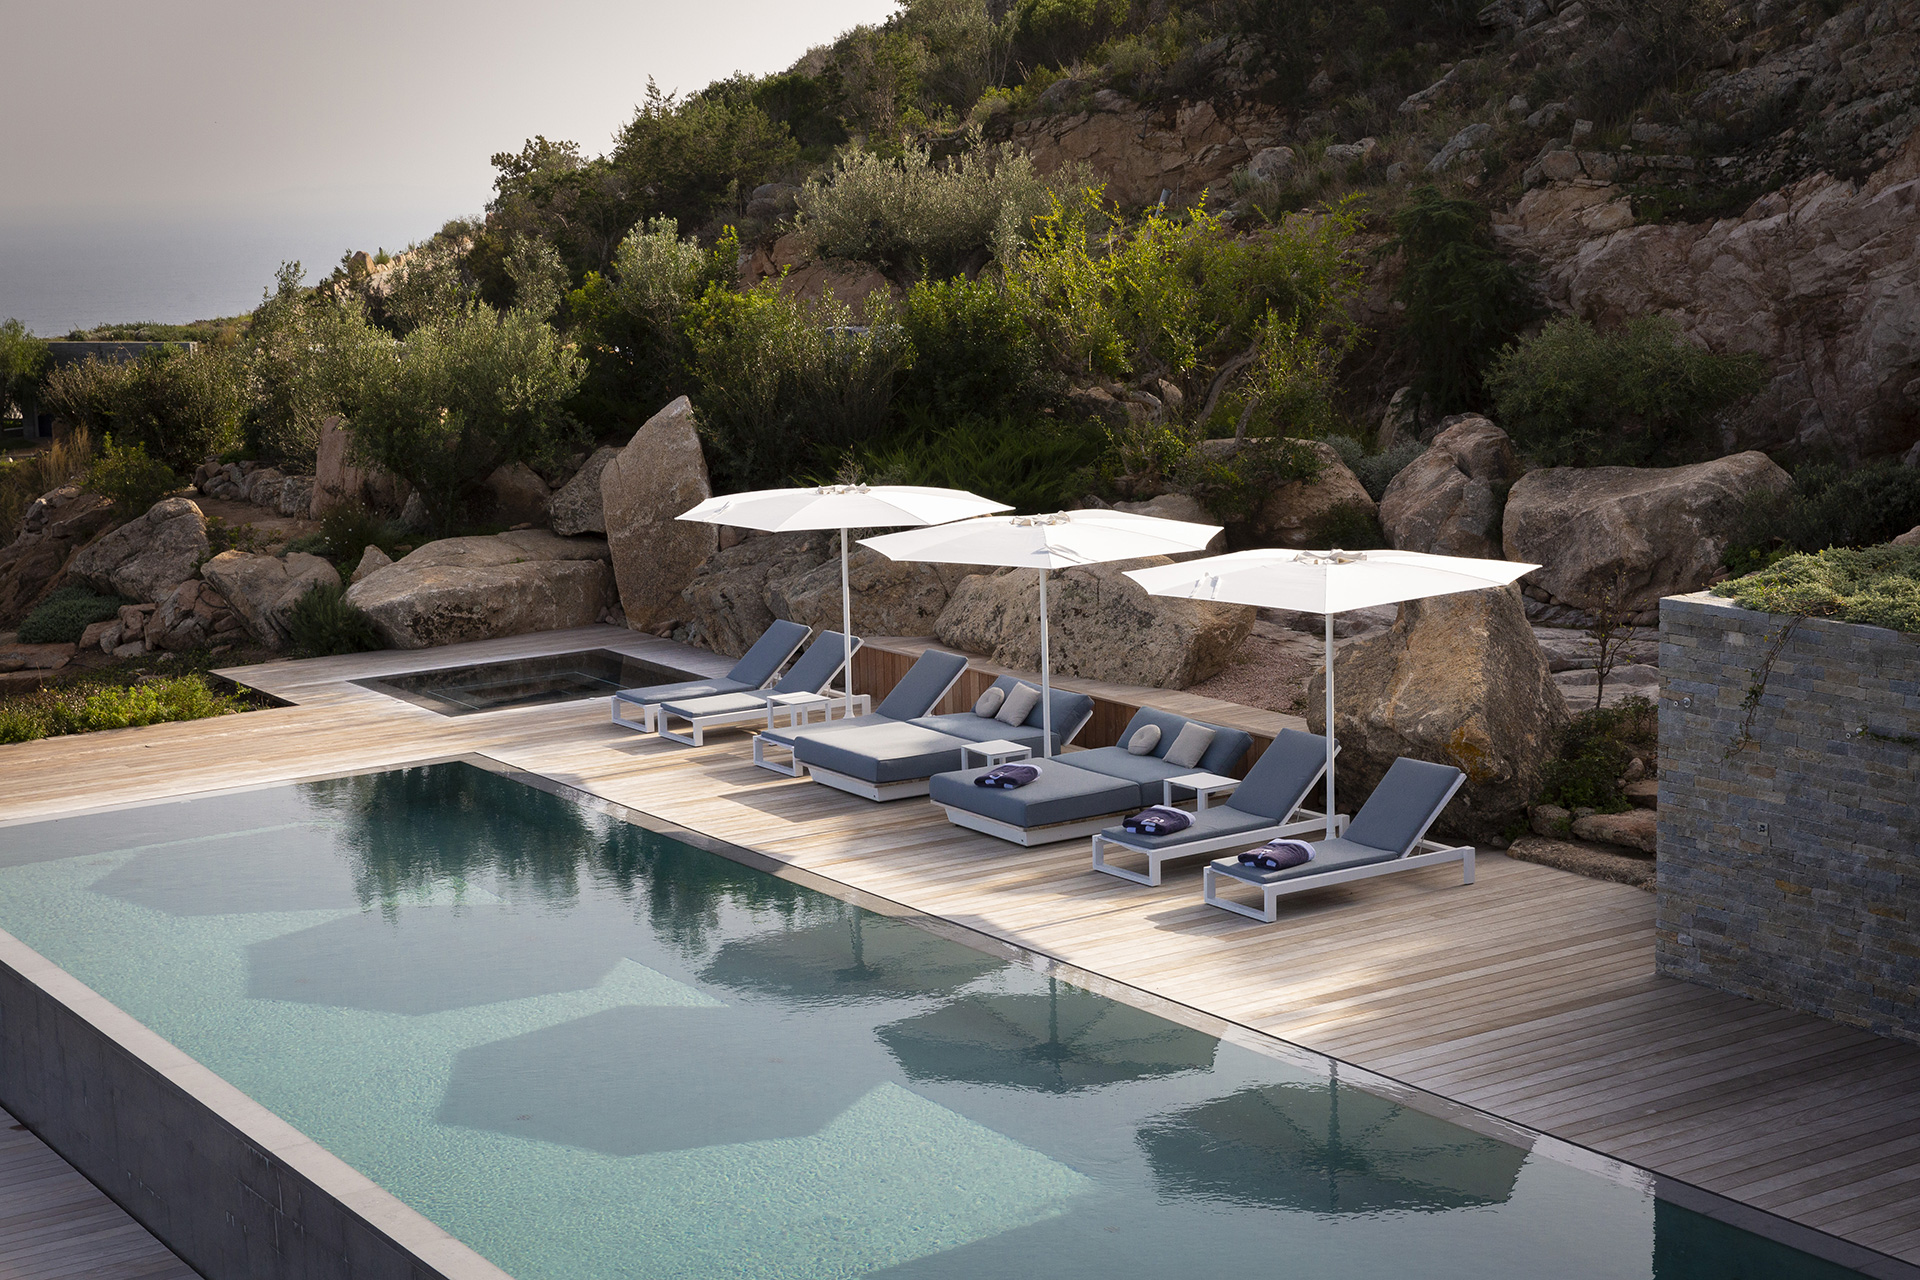 Swimming Pool of a villa in Corsica by Borella Art Design